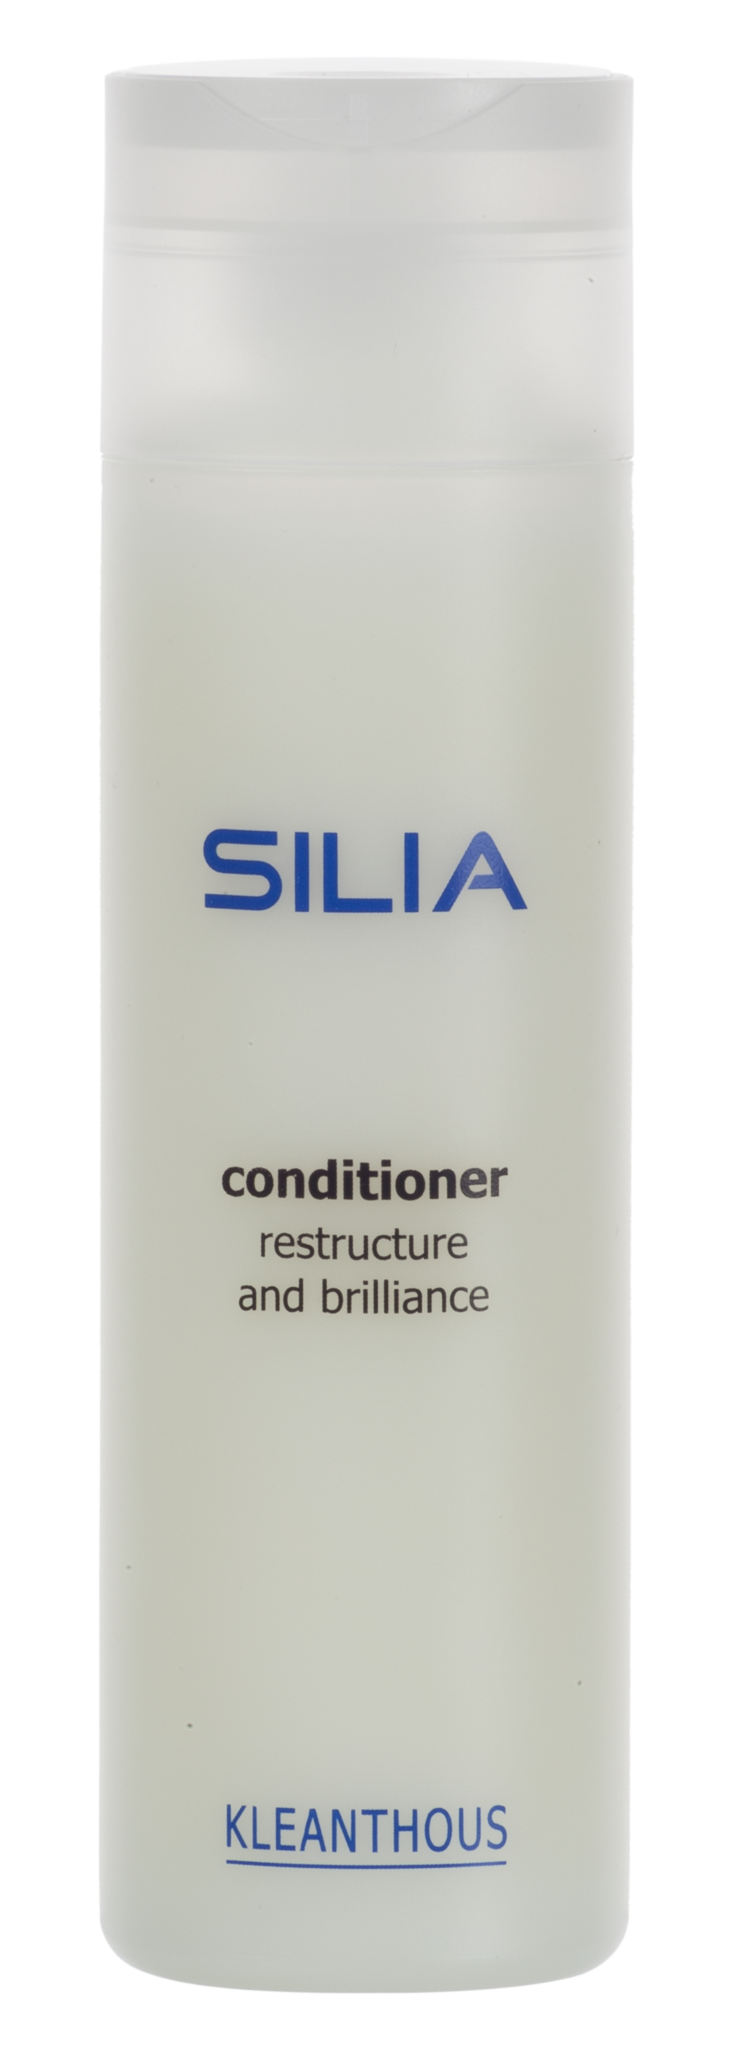 SILIA Conditioner